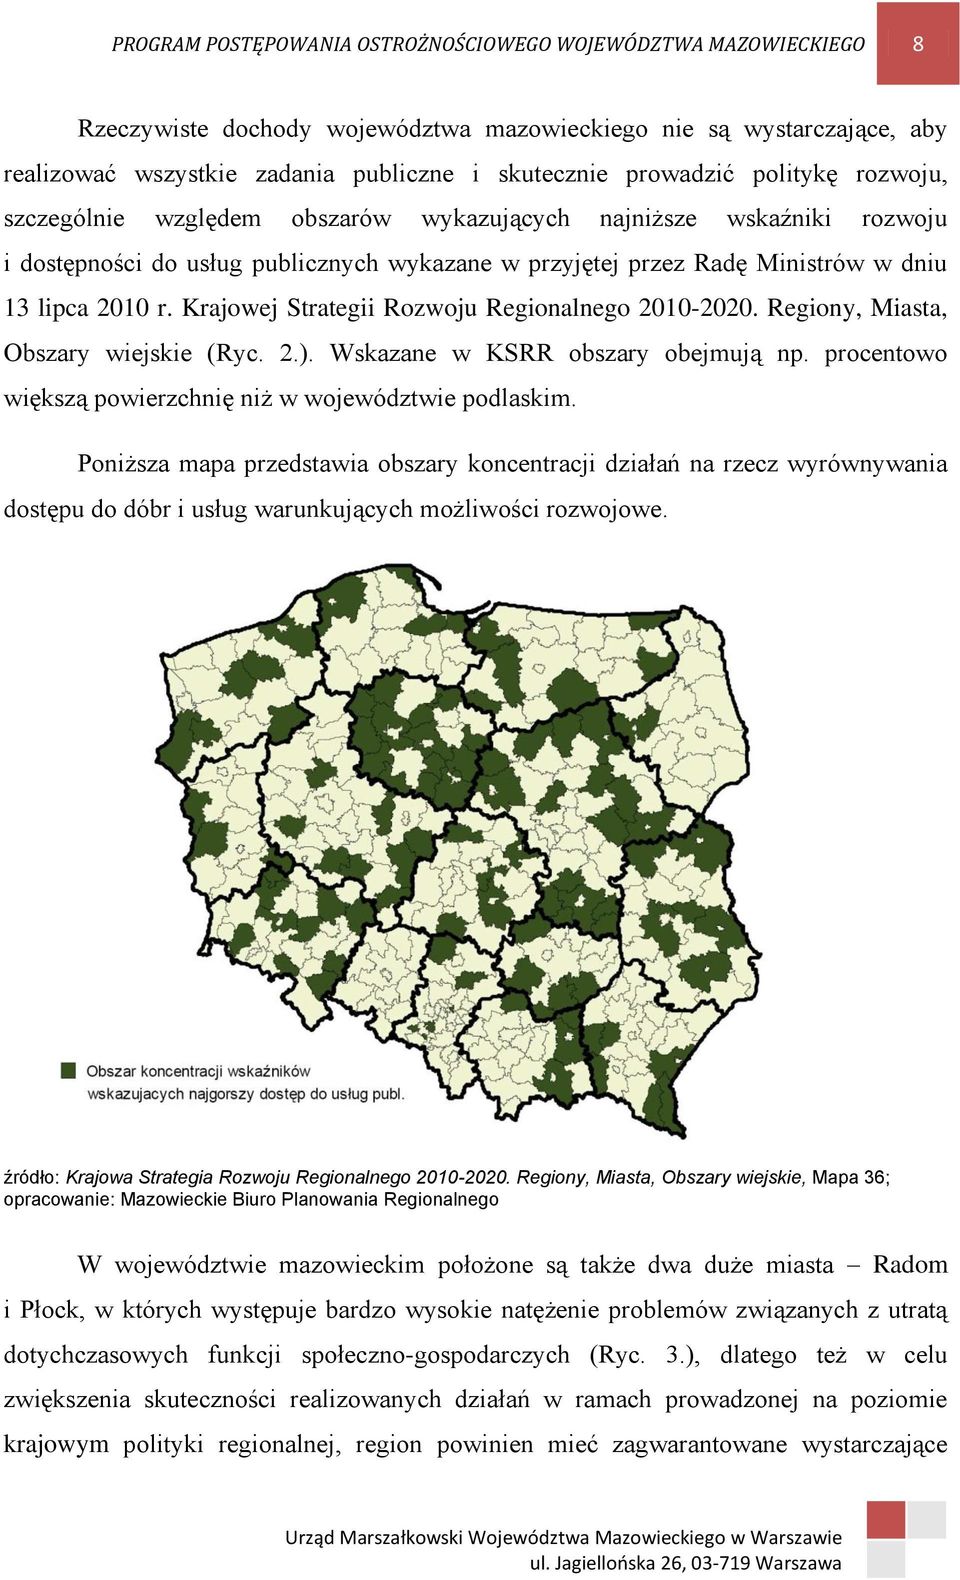 Krajowej Strategii Rozwoju Regionalnego 2010-2020. Regiony, Miasta, Obszary wiejskie (Ryc. 2.). Wskazane w KSRR obszary obejmują np. procentowo większą powierzchnię niż w województwie podlaskim.